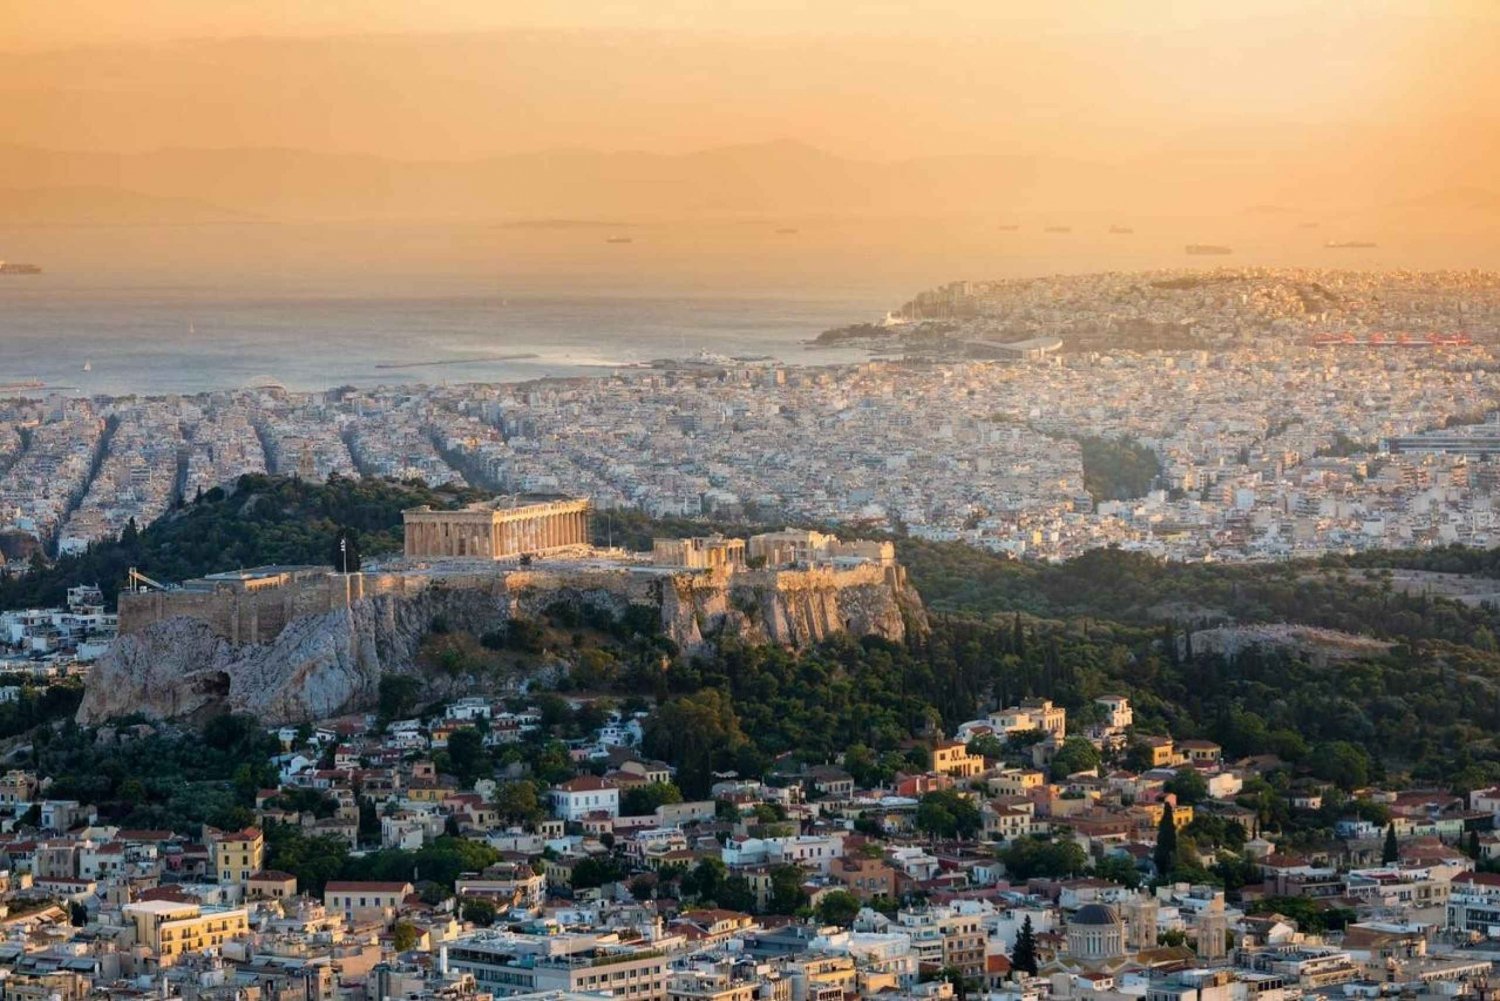 Athènes : la visite guidée de l'Acropole en espagnol sans billets